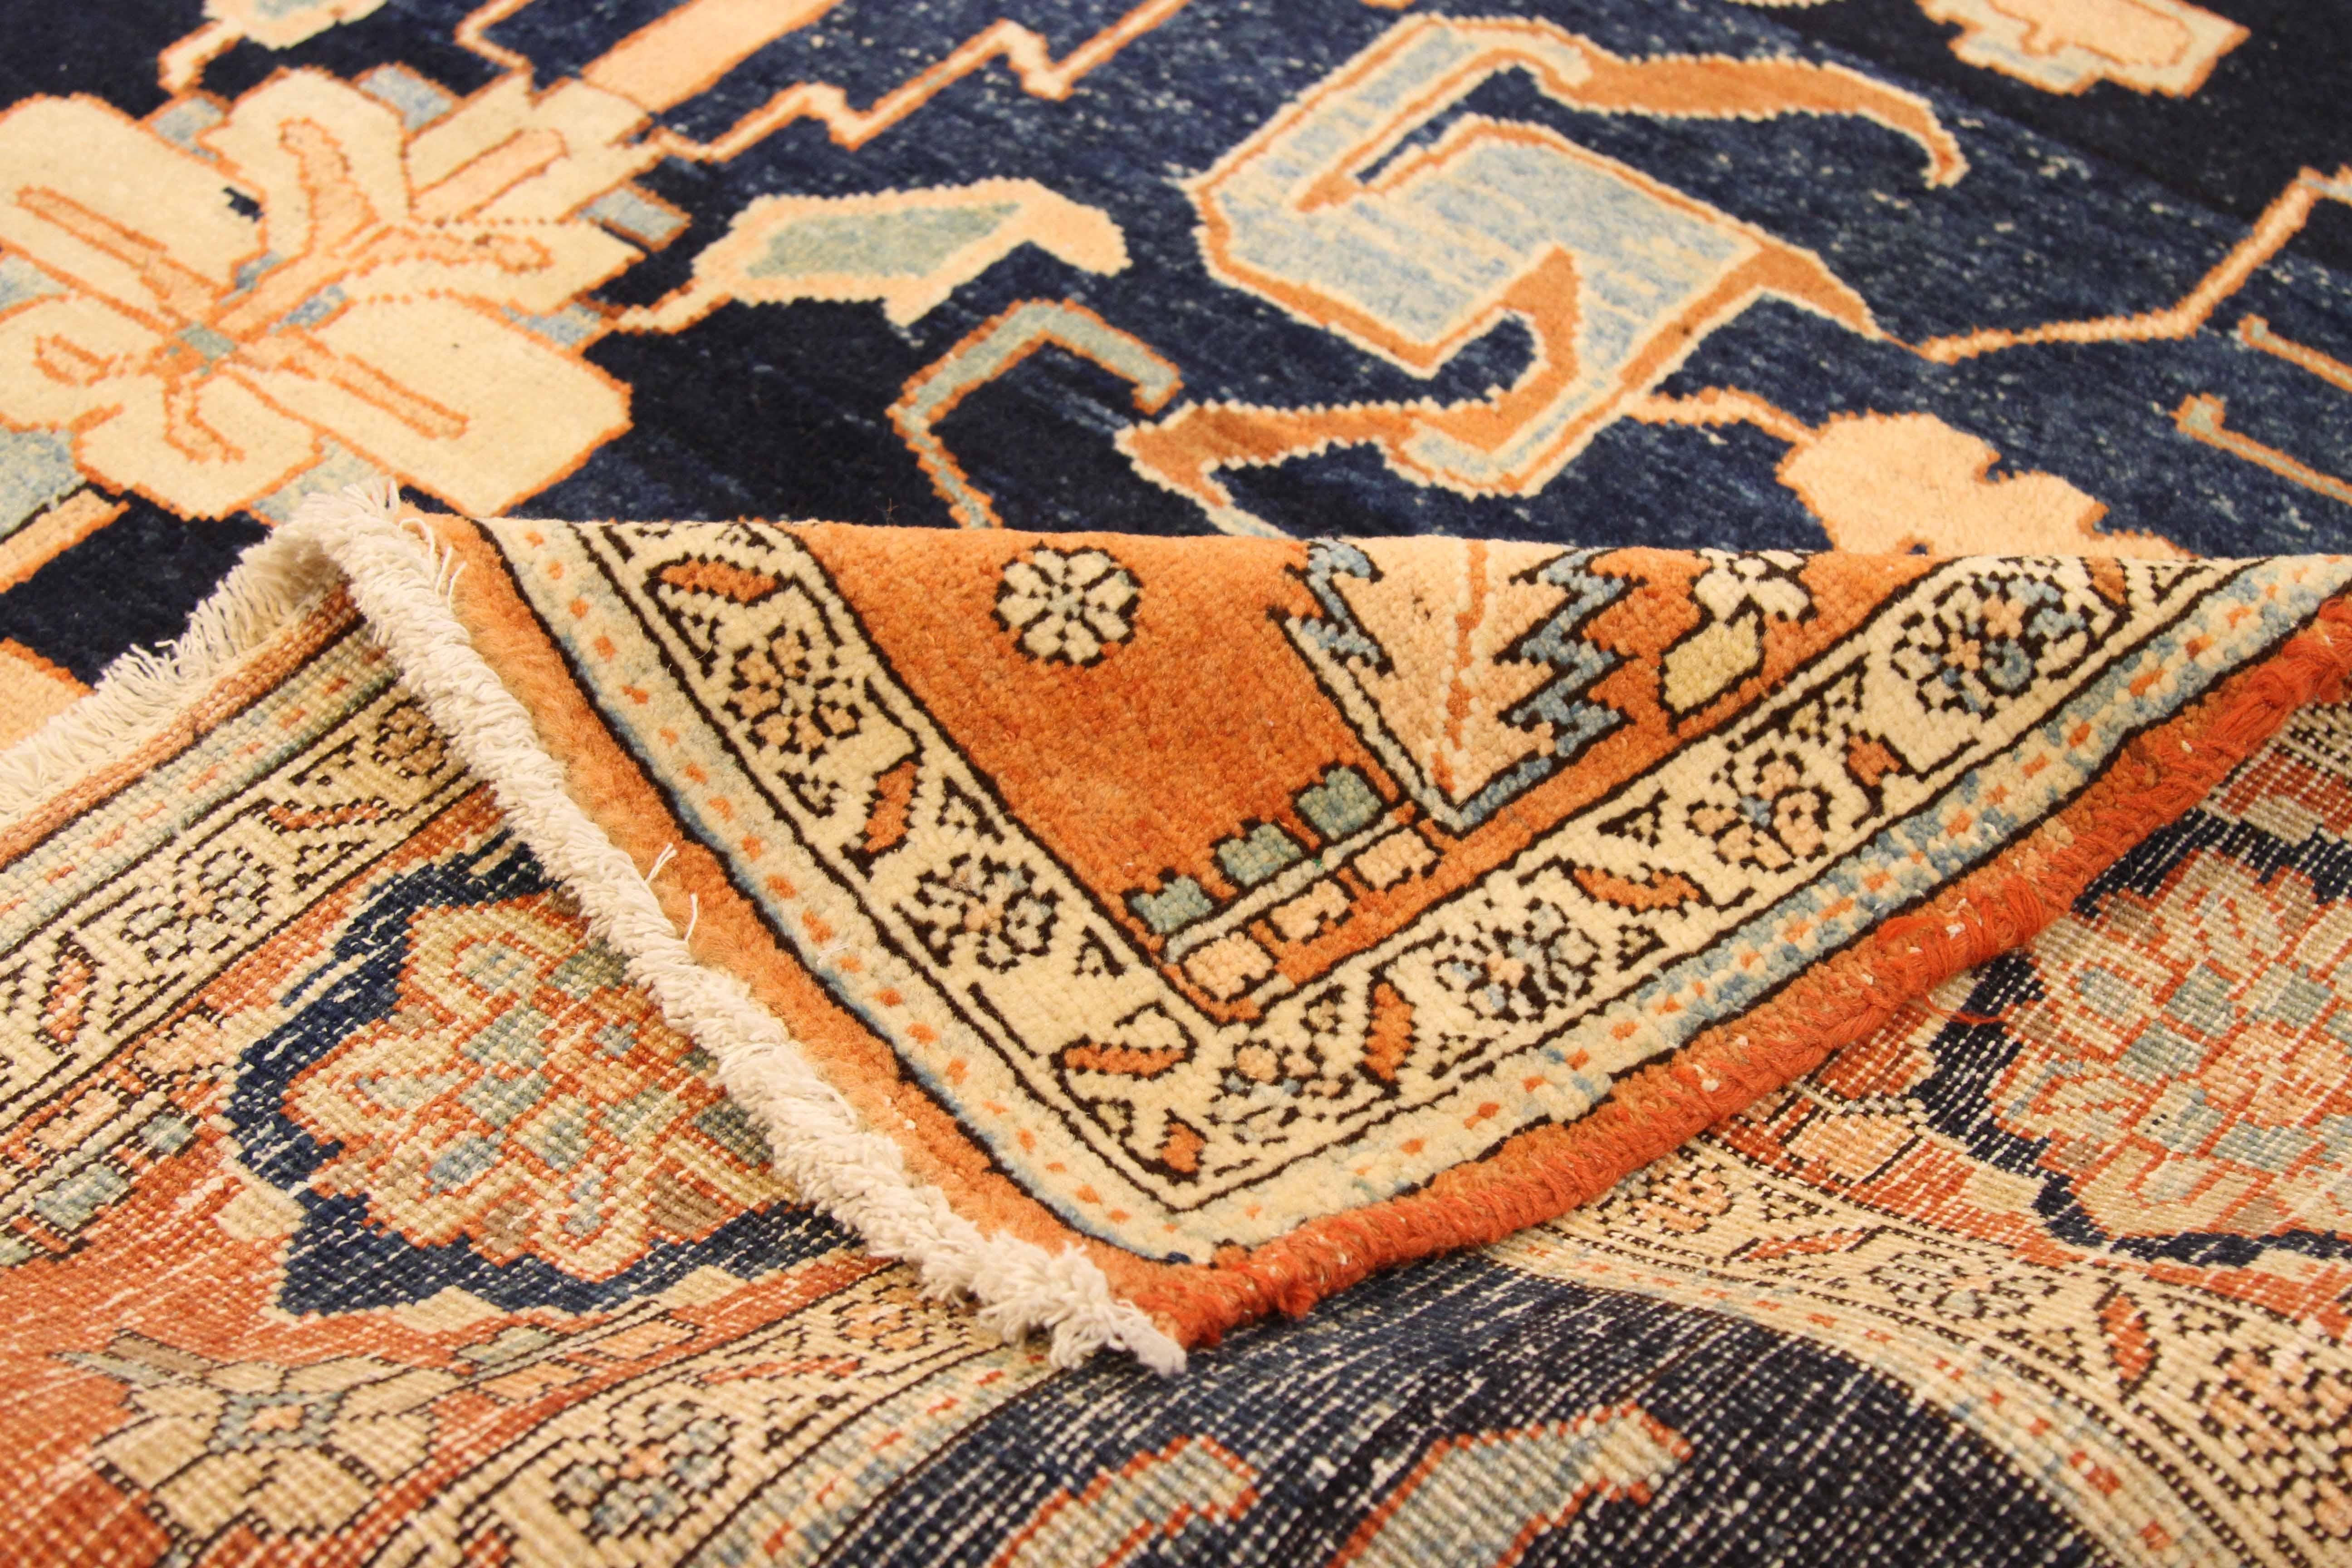 Hand-Woven Vintage Persian Area Rug Heriz Design